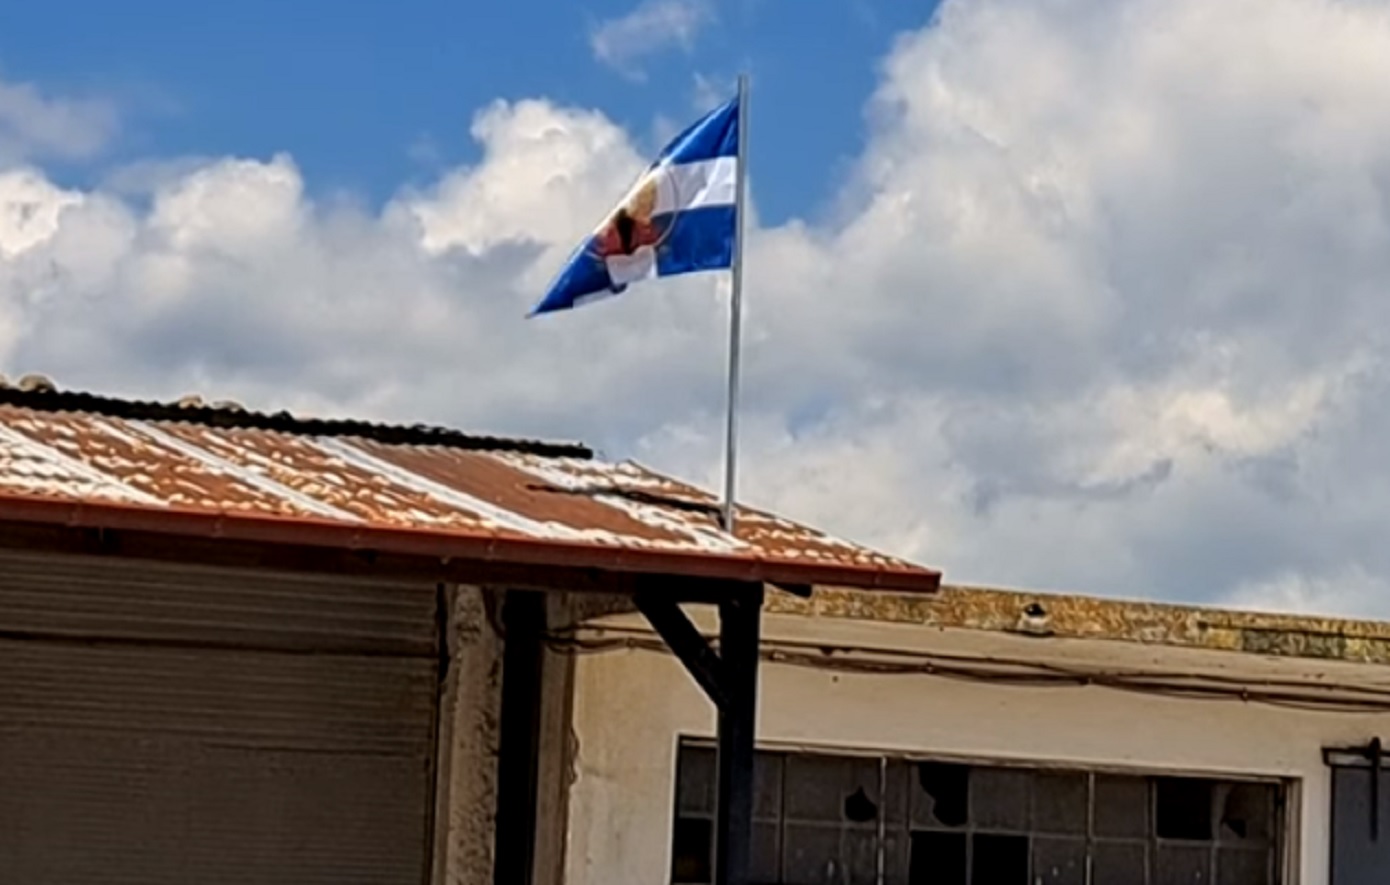 Ύψωσαν σημαία της Χούντας στον Αγροτικό Συνεταιρισμό Λαμίας – Δικογραφία, αντιδράσεις και υποστολή